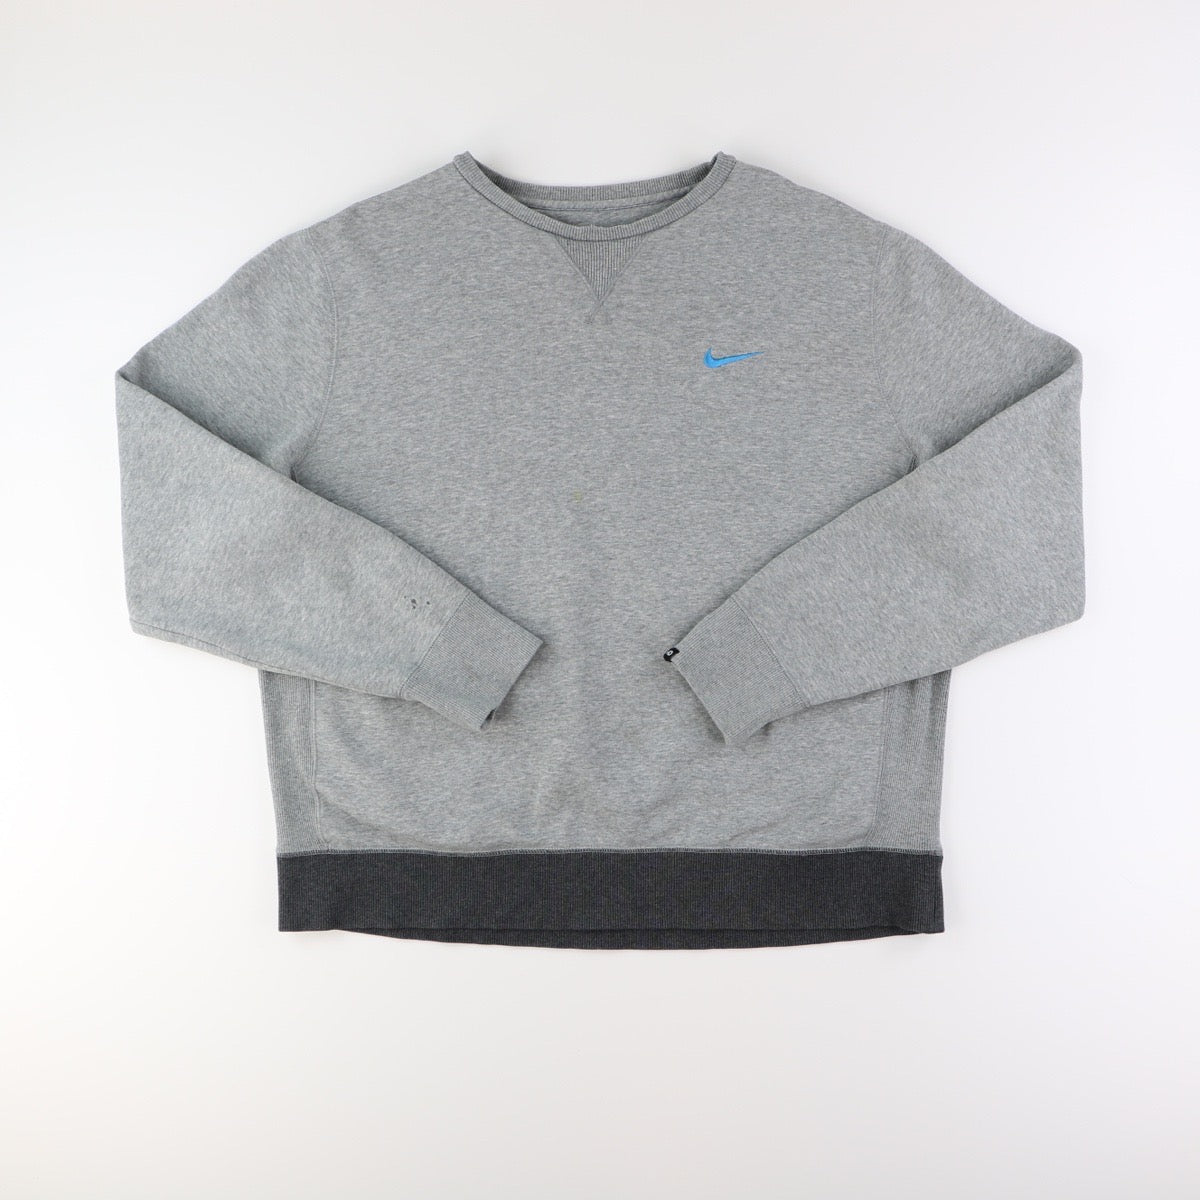 Nike Sweater (XL)